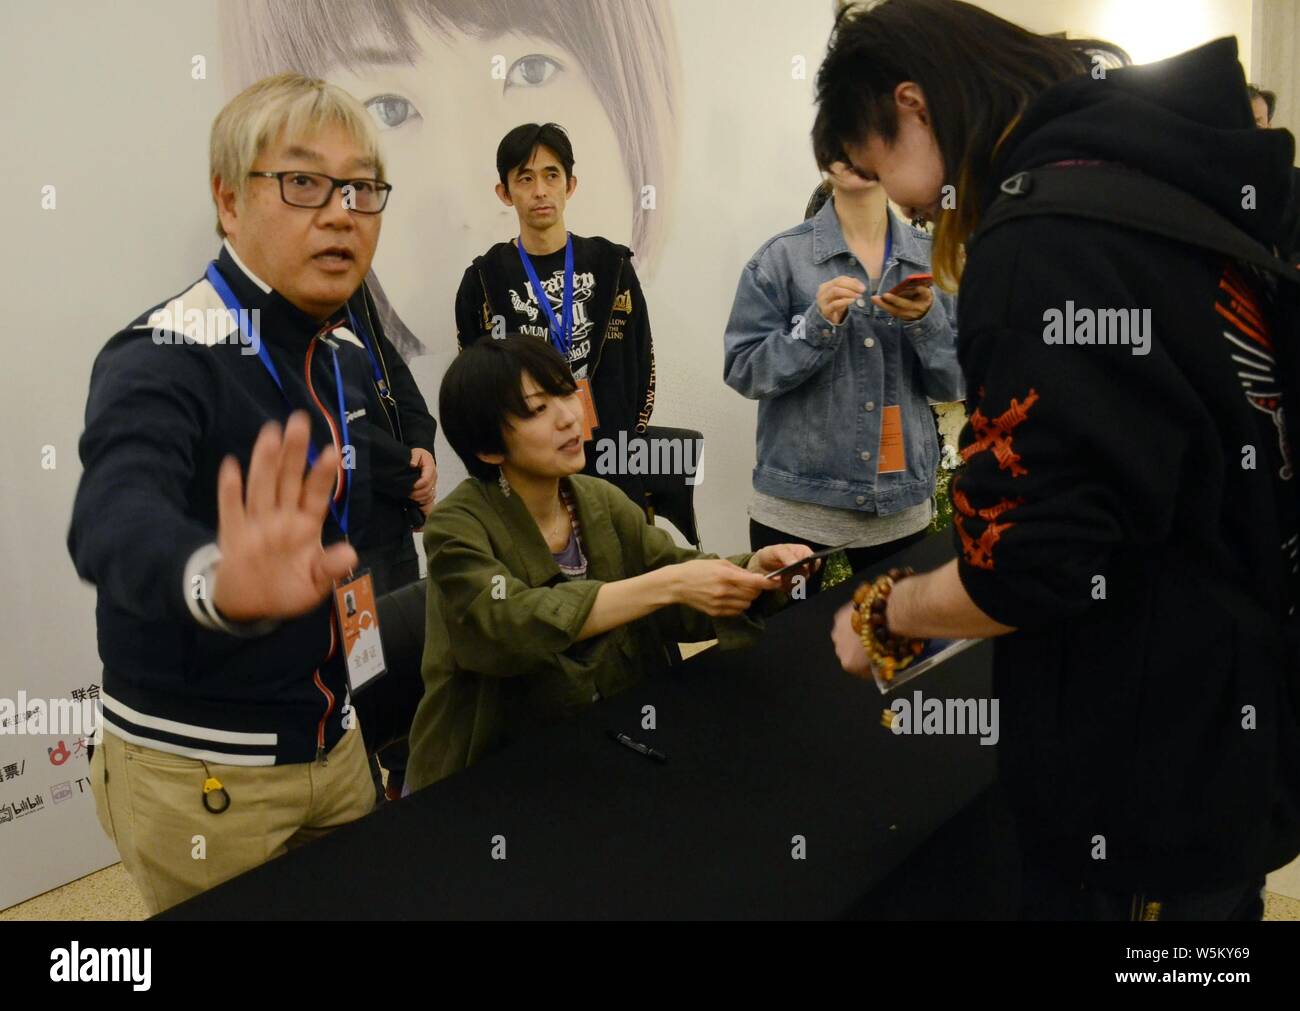 Japanische Pop female singer-songwriter Anri Kumaki besucht eine Autogrammstunde in Shanghai, China, 14. April 2019. Stockfoto